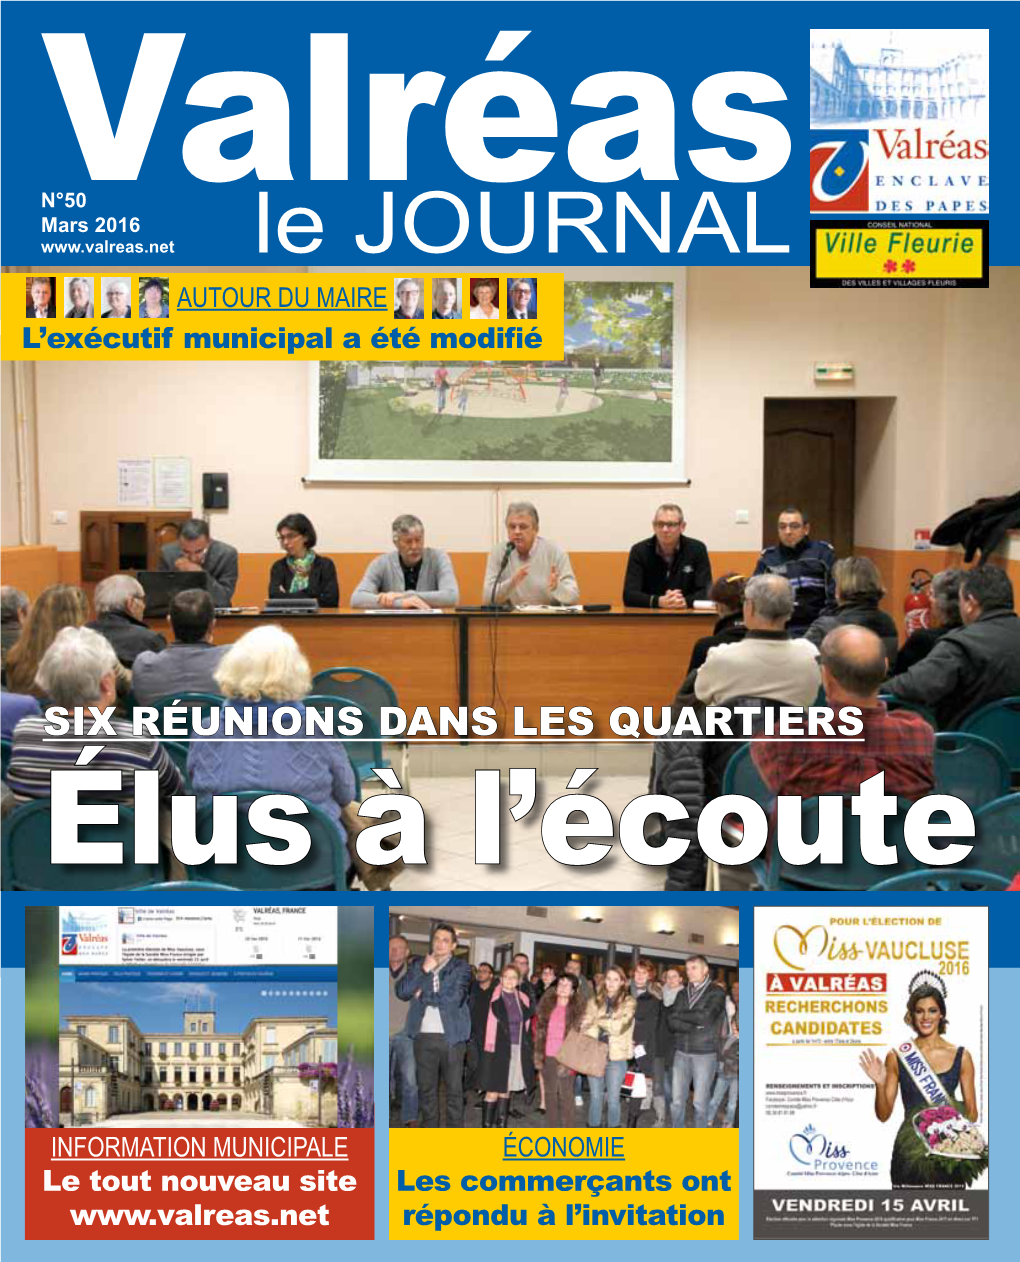 Le JOURNAL Autour Du Maire L’Exécutif Municipal a Été Modifié